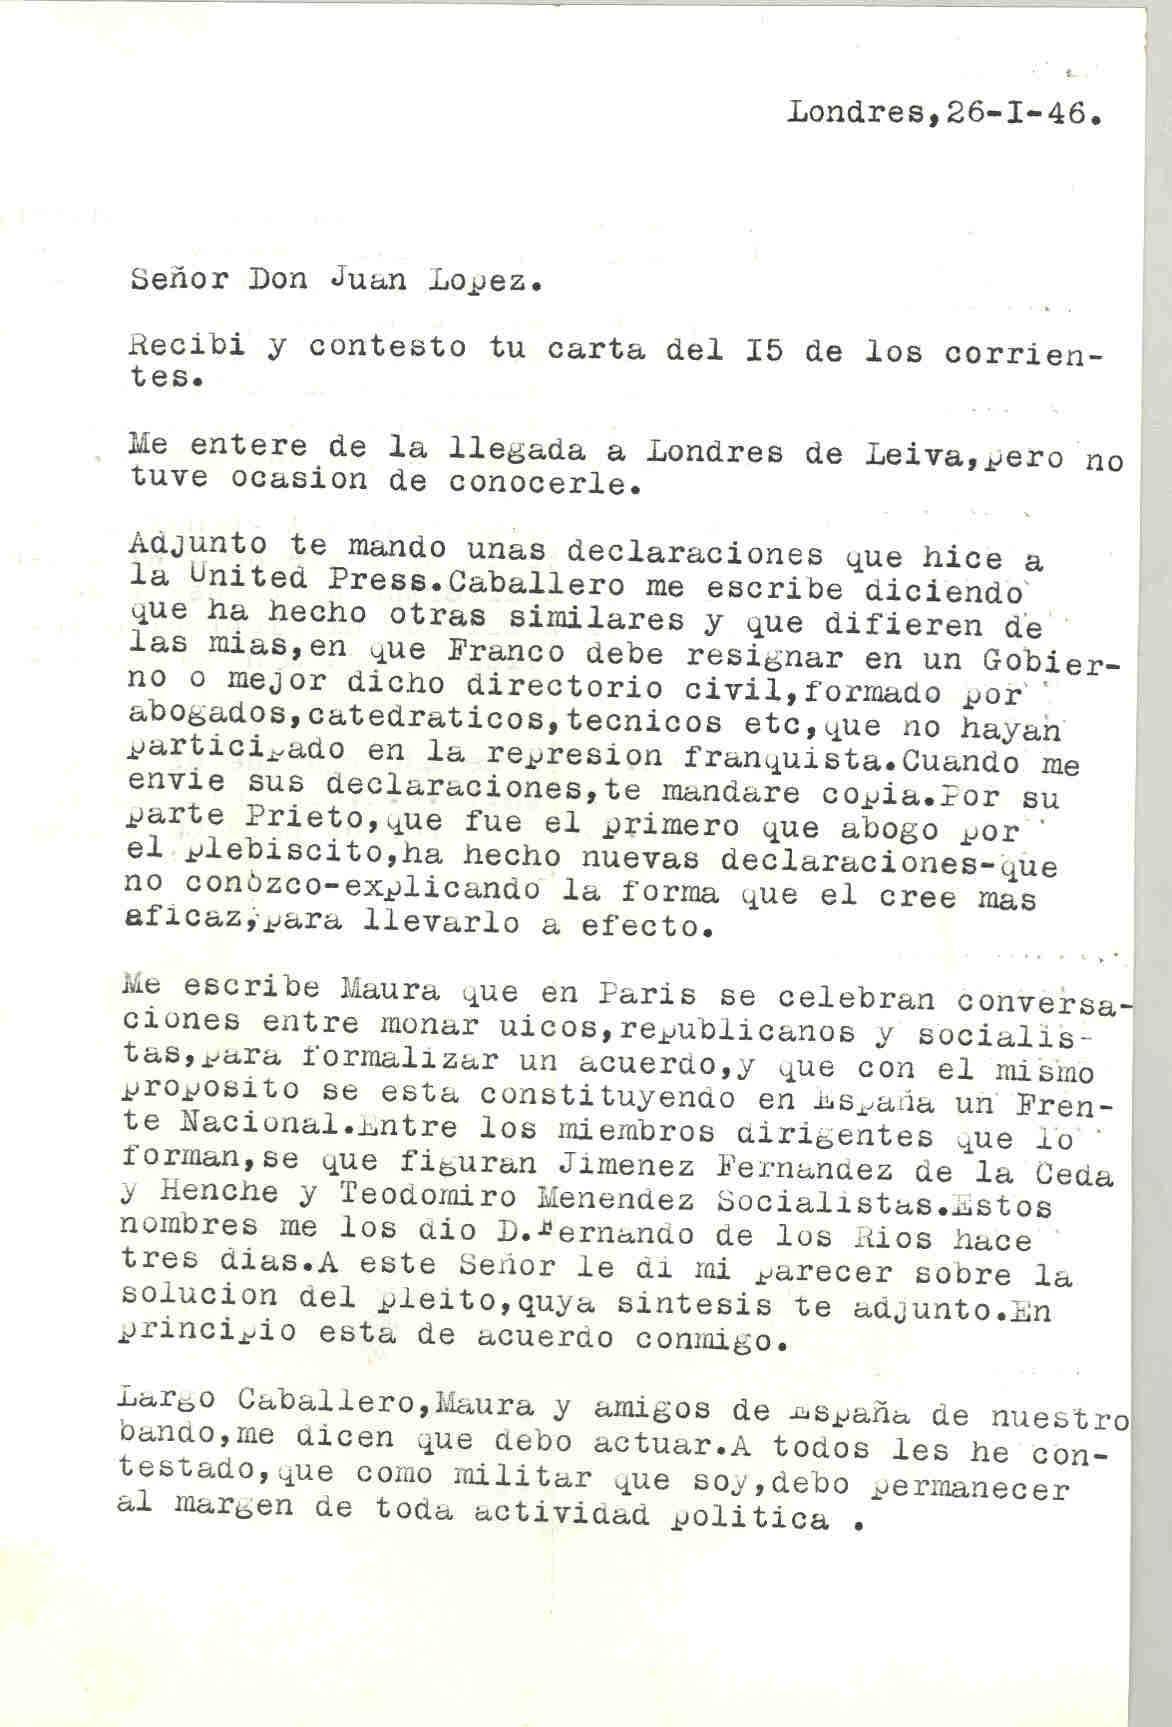 Carta de Segismundo Casado en la que cuenta que Maura le escribe que en París se celebran conversaciones entre monárquicos, republicanos y socialistas para formar un acuerdo, y con el mismo propósito se está constituyendo en España un Frente Nacional.